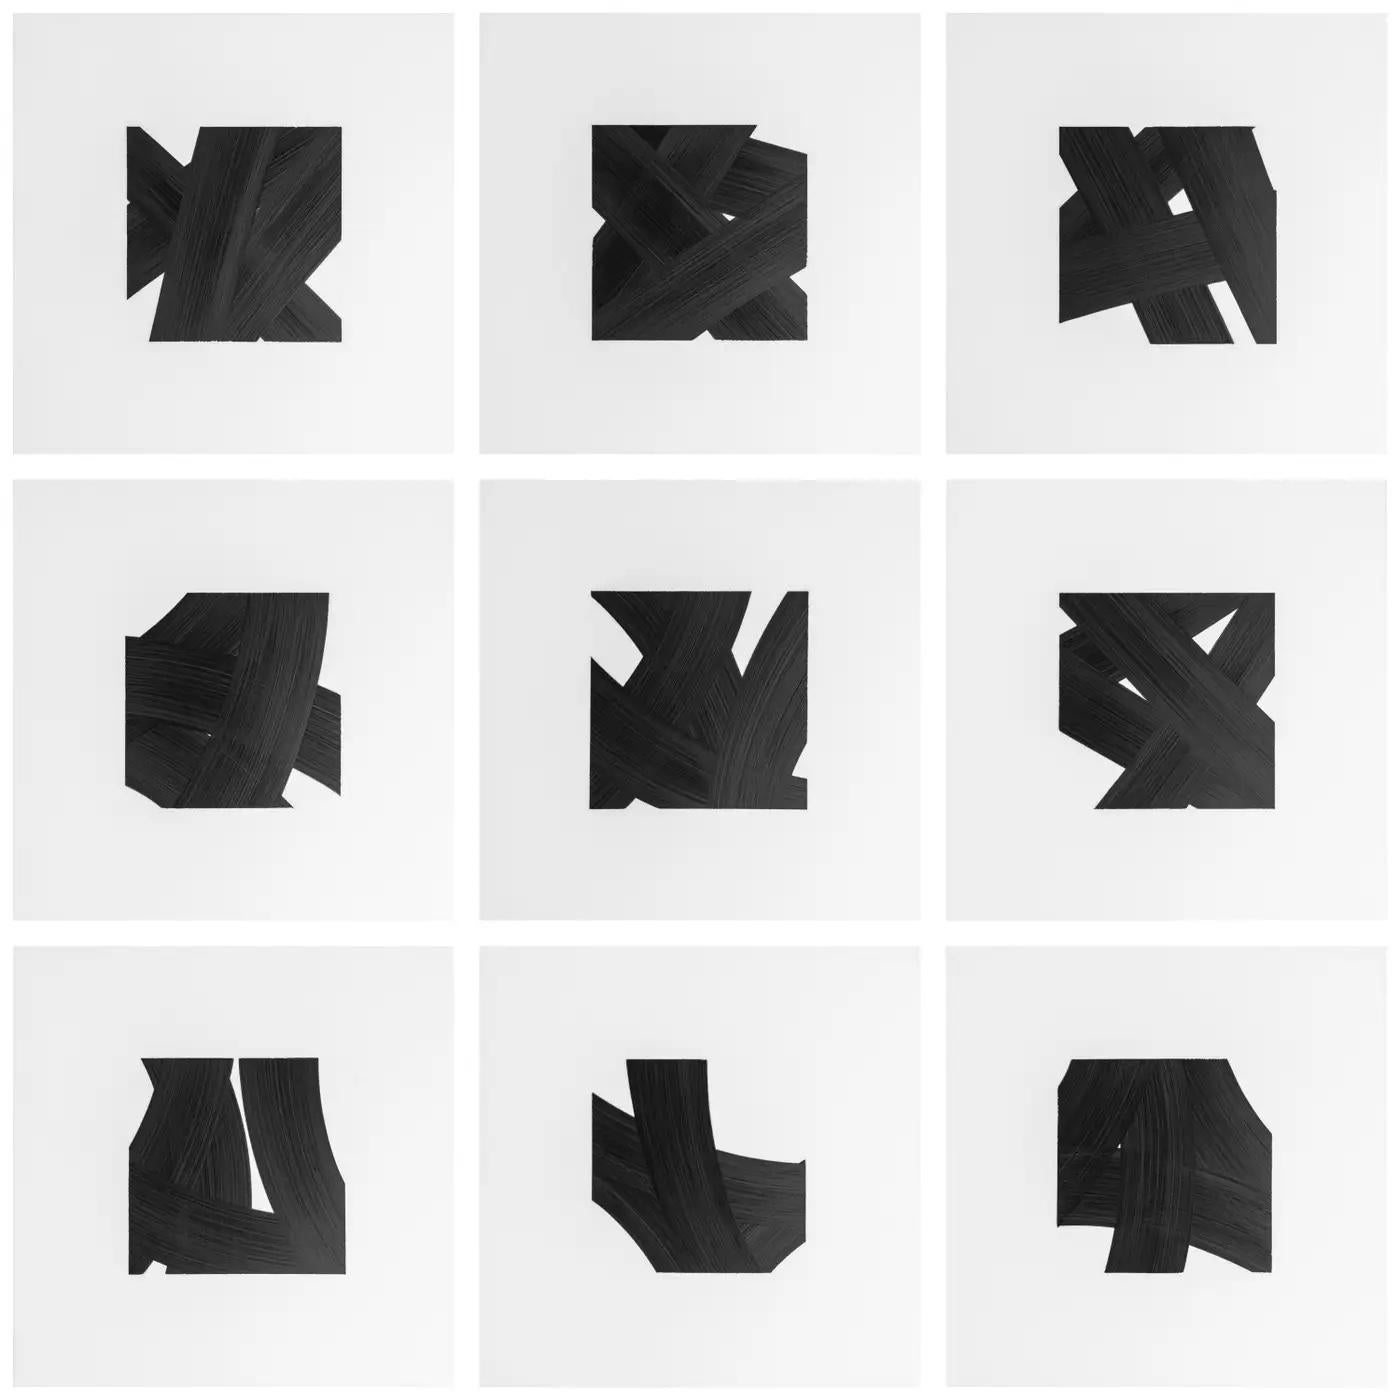 Les dessins à l'encre noire sur mylar de l'artiste new-yorkais contemporain Patrick Carrara ont été réalisés en 2016 - 2017. Il s'agit de sa dernière série Appearance, qu'il a commencée il y a dix ans et qui progresse également par numéros. Il